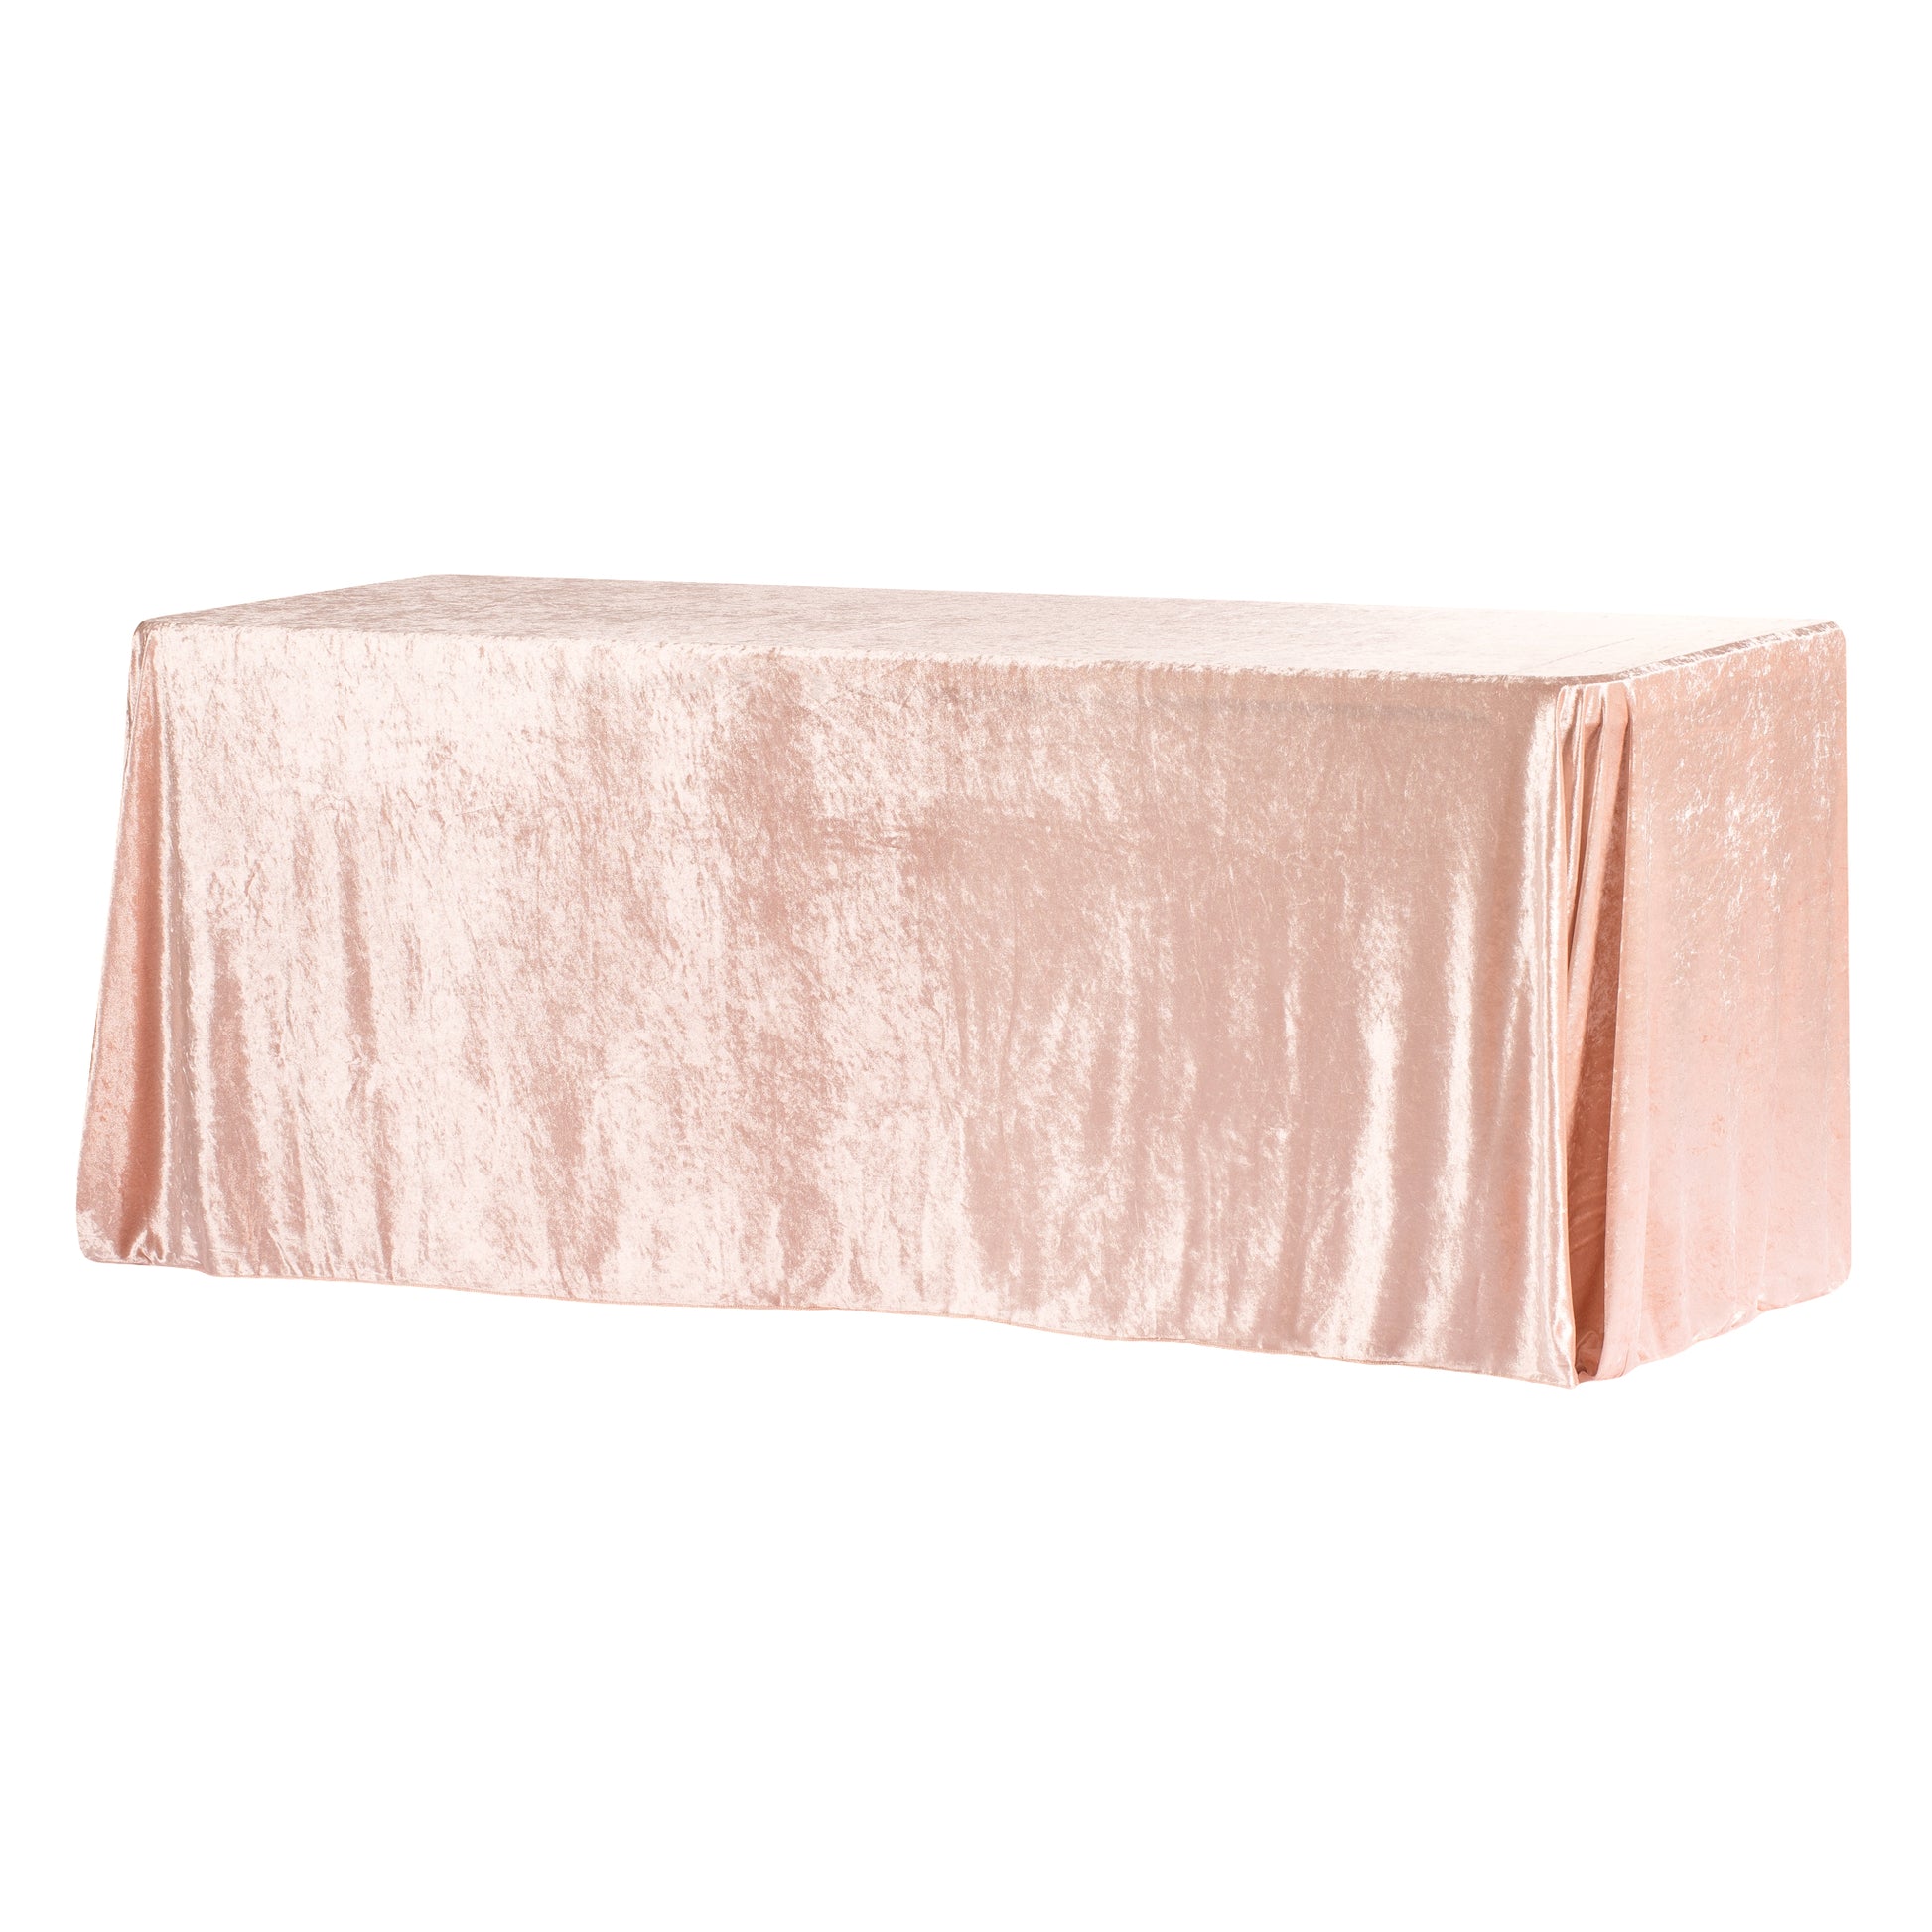 Velvet 90"x156" Rectangular Tablecloth - Blush/Rose Gold - CV Linens